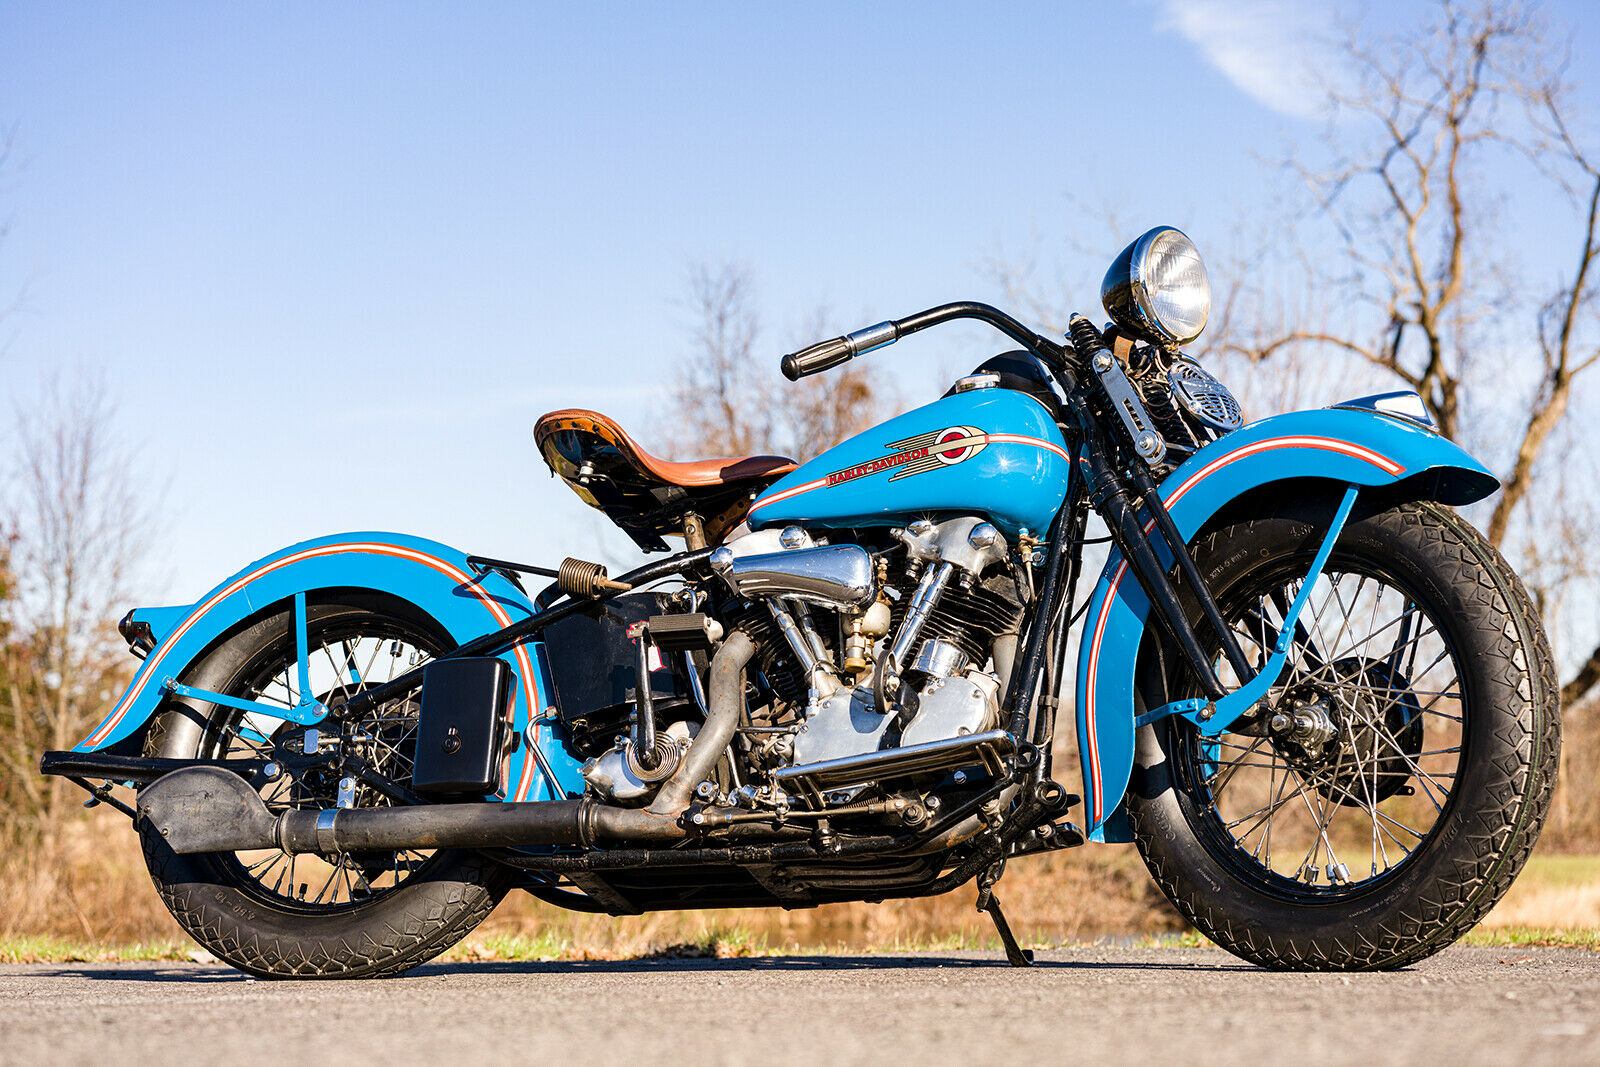 1938 Harley Davidson Flathead Knucklehead El Vintage Antique Restored Mint For Sale 2021 02 18 1 